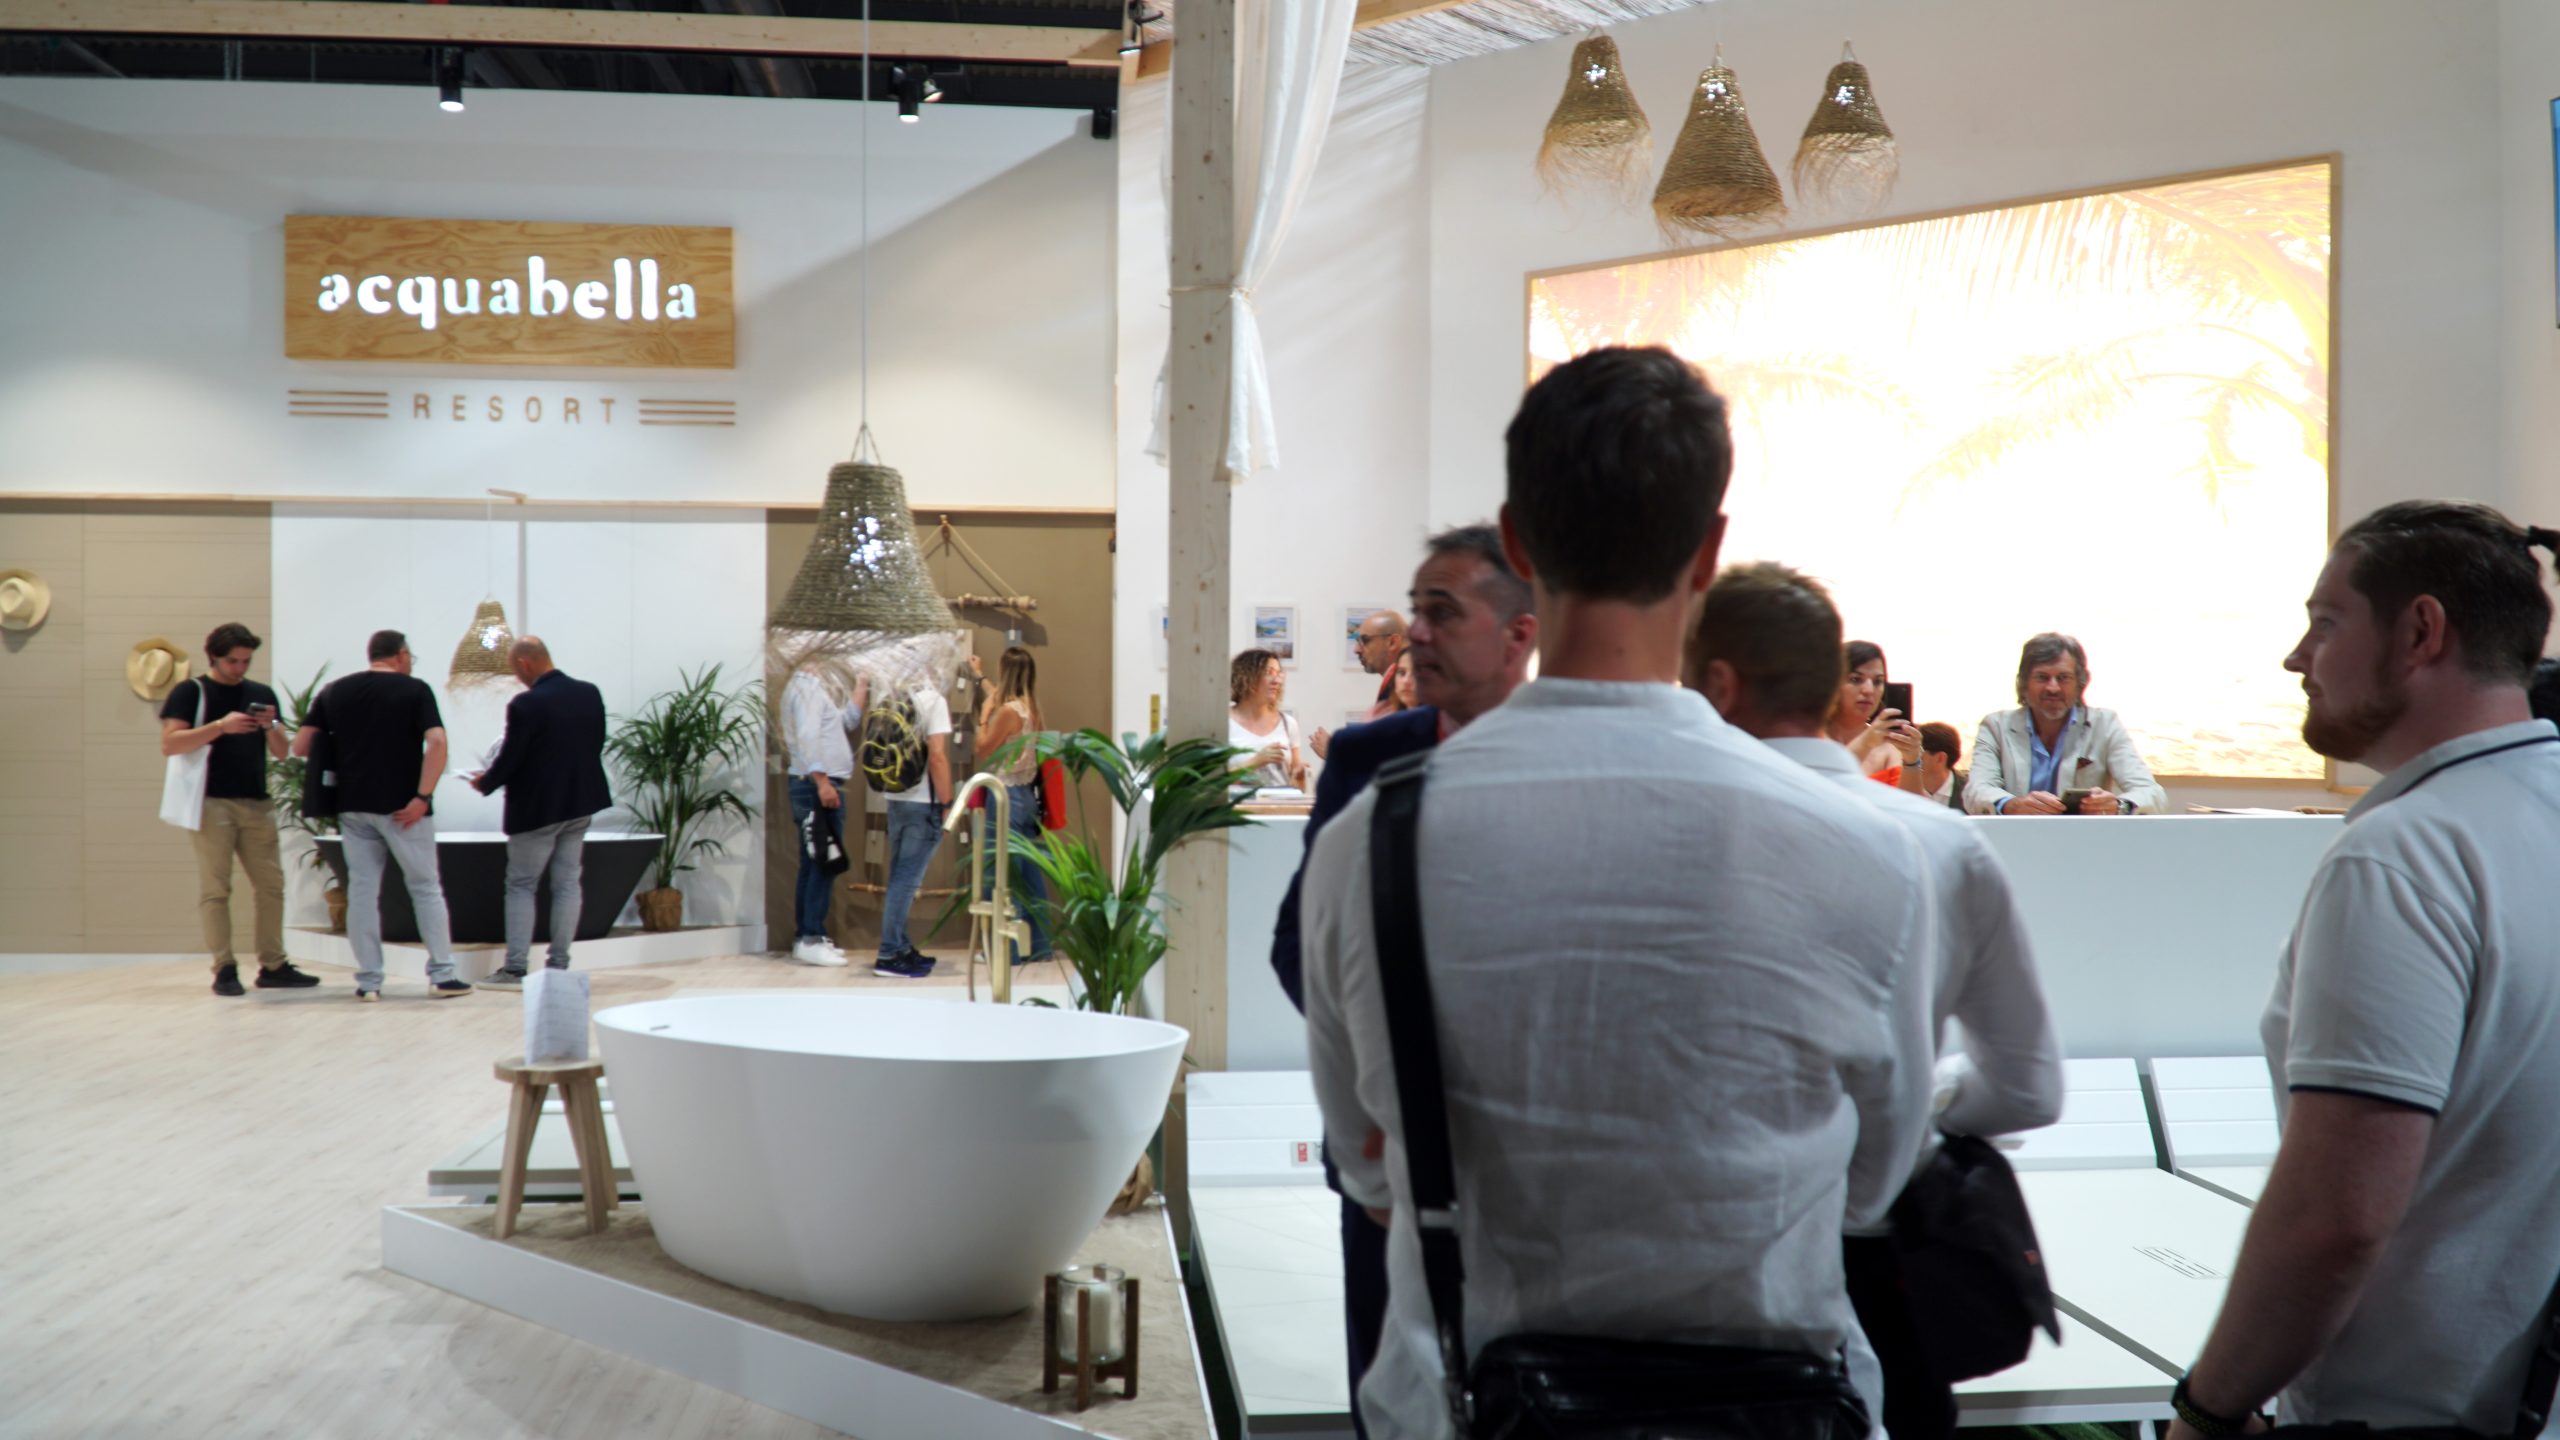 Acquabella abre las puertas de su resort en el Salone del Mobile 2022